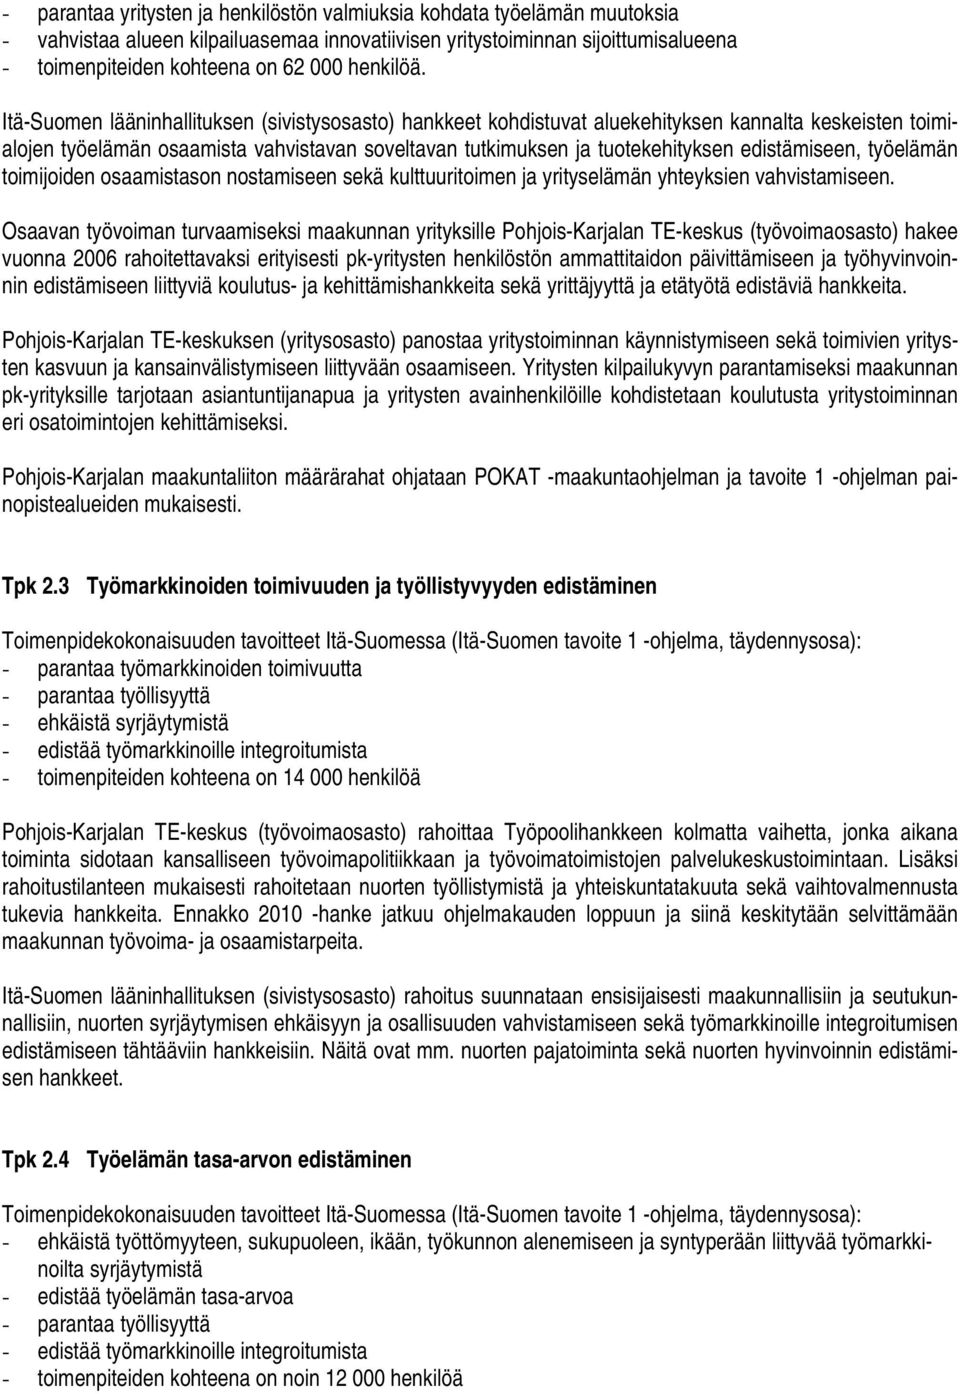 Itä-Suomen lääninhallituksen (sivistysosasto) hankkeet kohdistuvat aluekehityksen kannalta keskeisten toimialojen työelämän osaamista vahvistavan soveltavan tutkimuksen ja tuotekehityksen